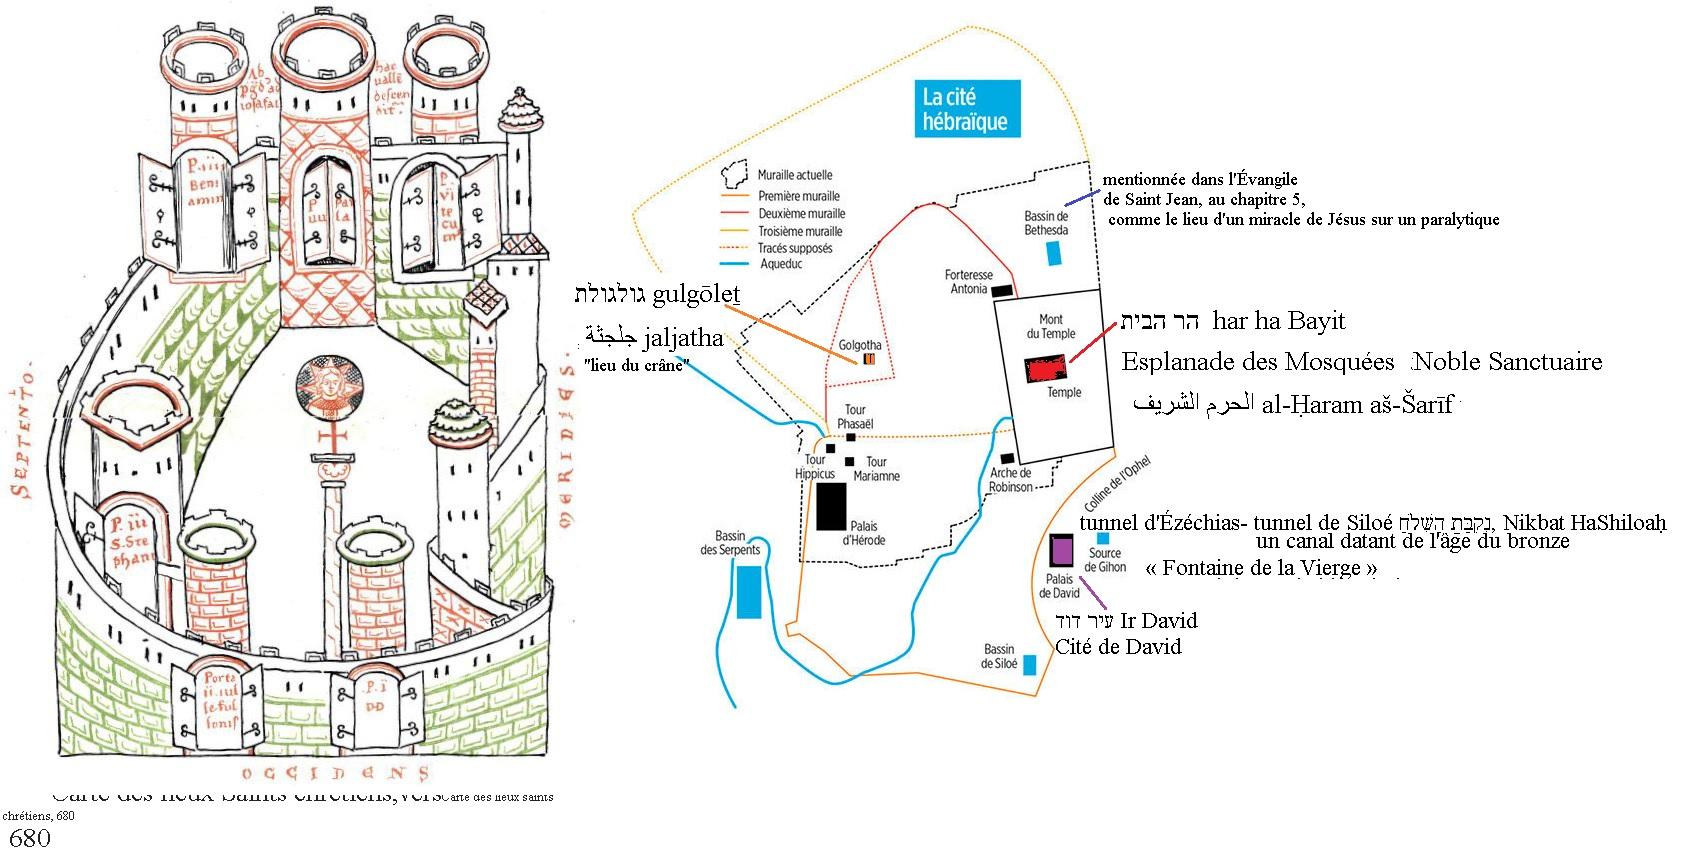 Jerusalem carte